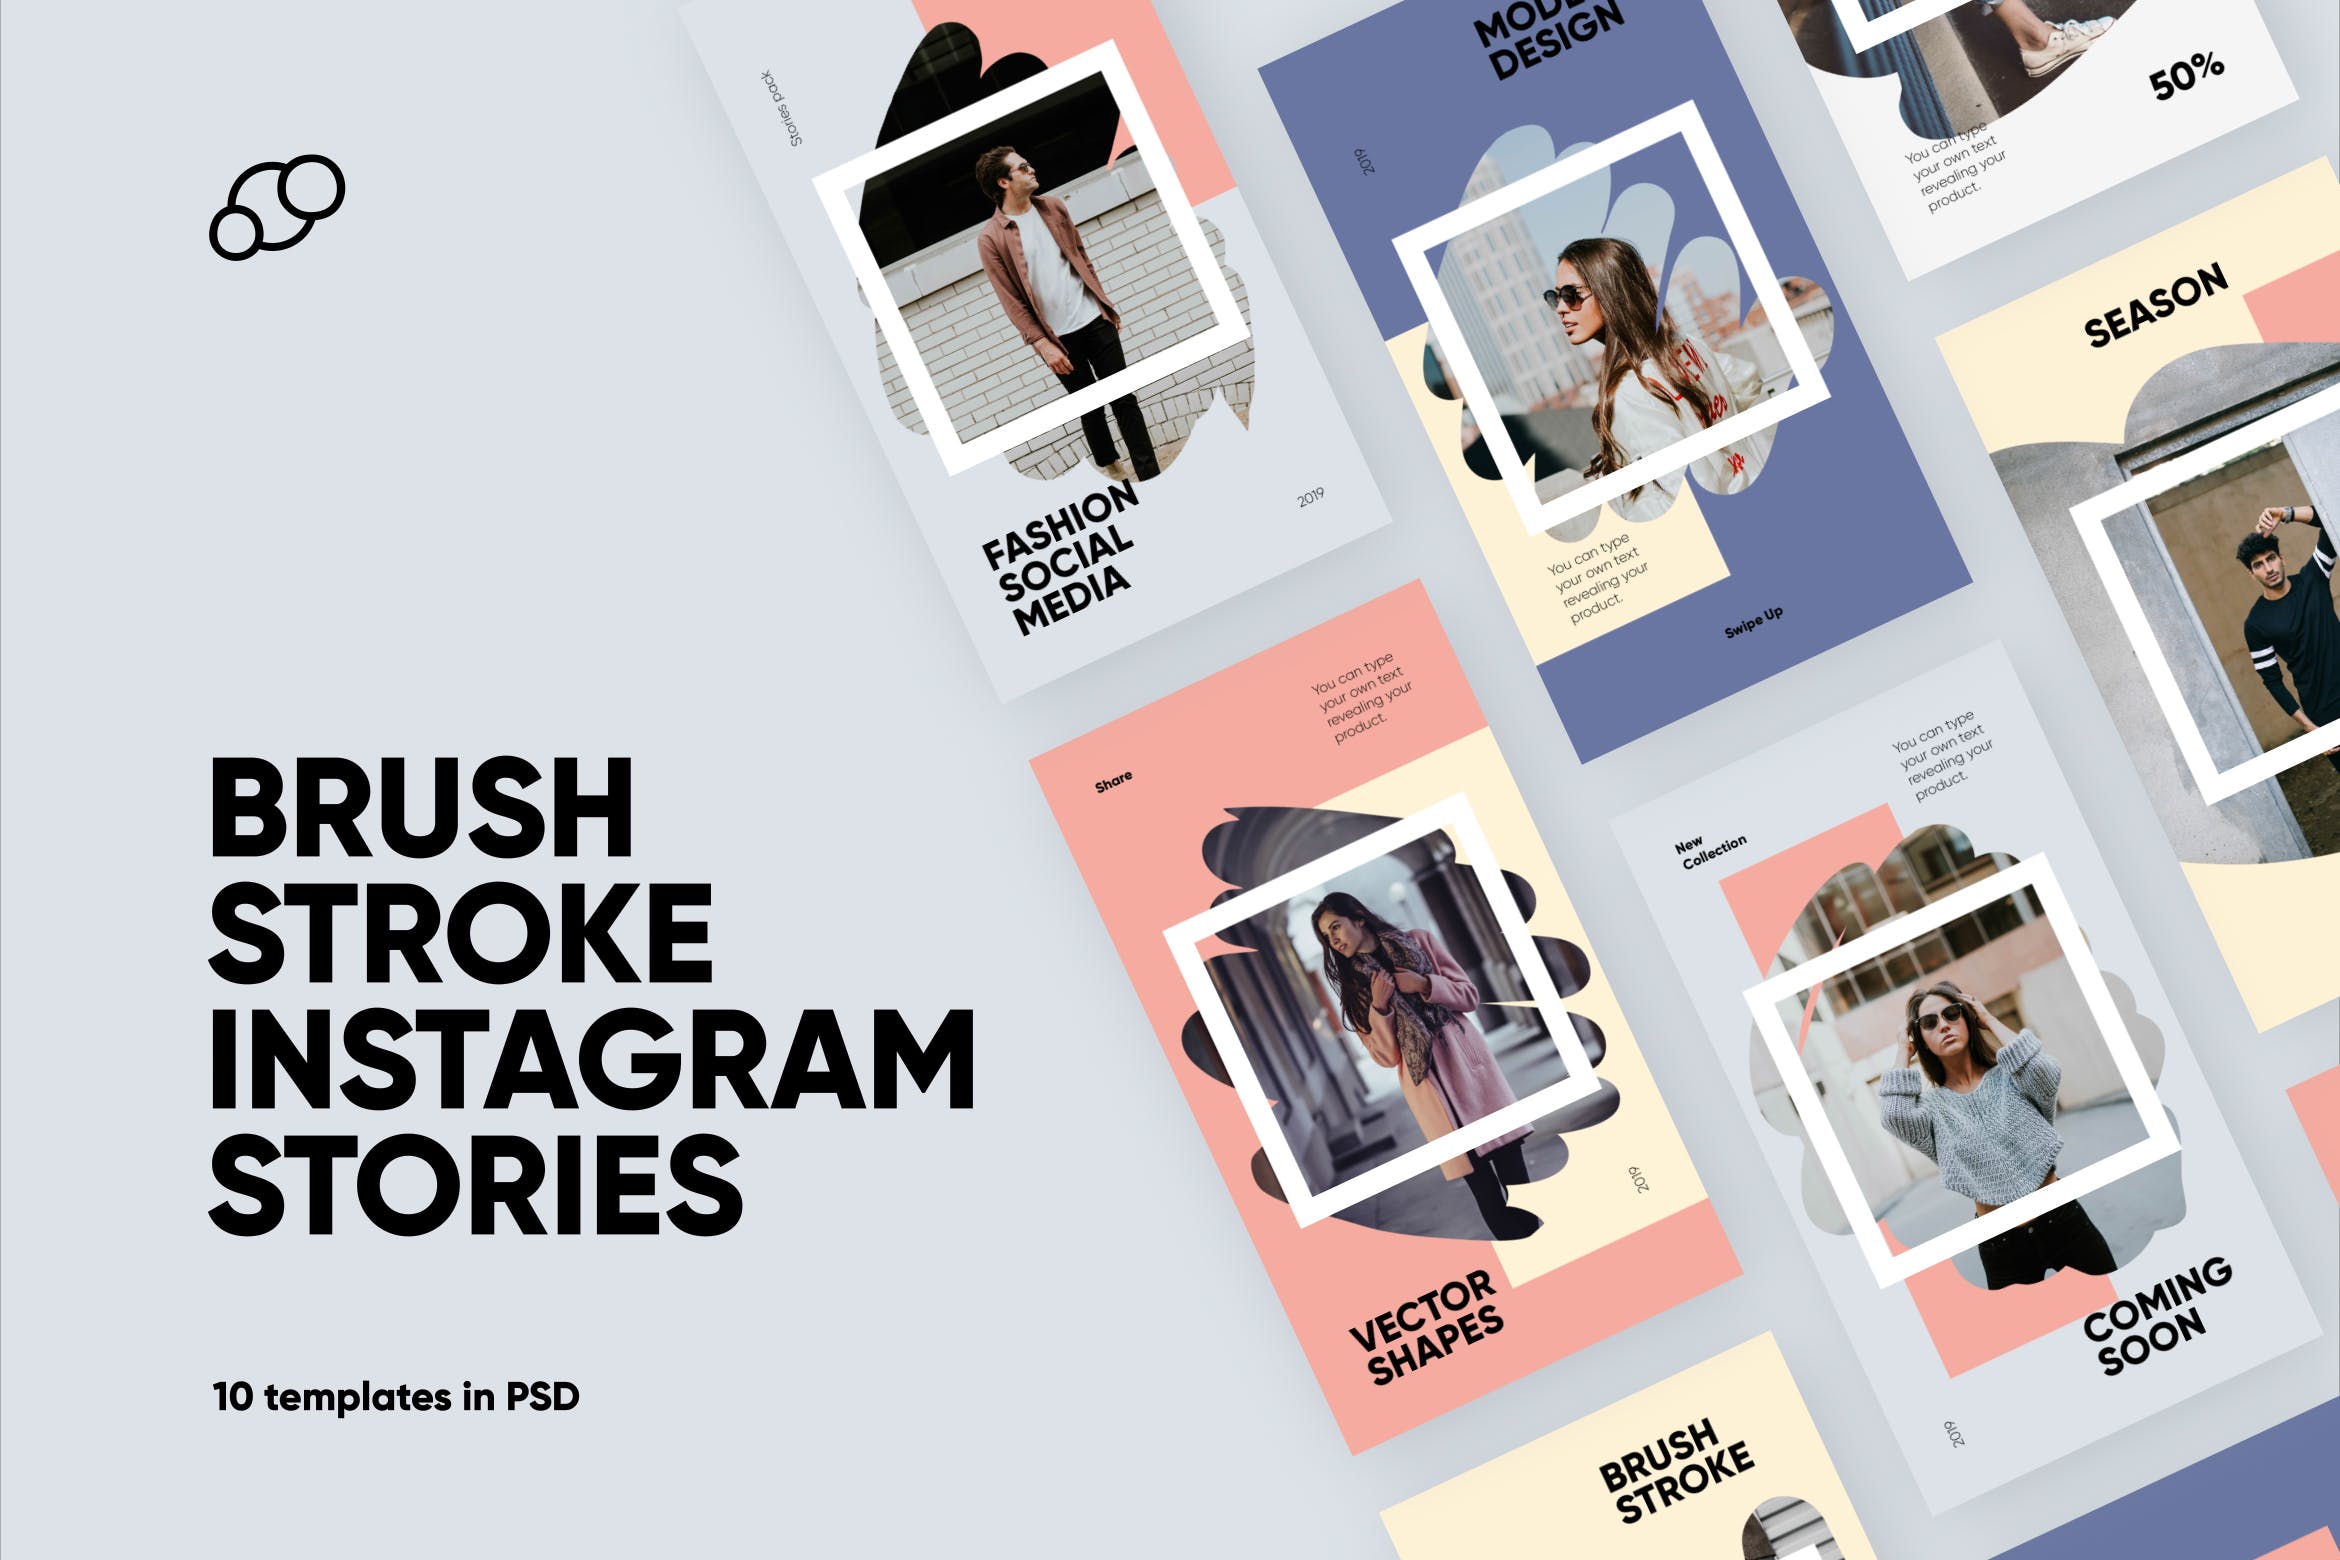 画笔笔触风格Instagram品牌故事包装设计素材 Brush Stroke Instagram Stories插图